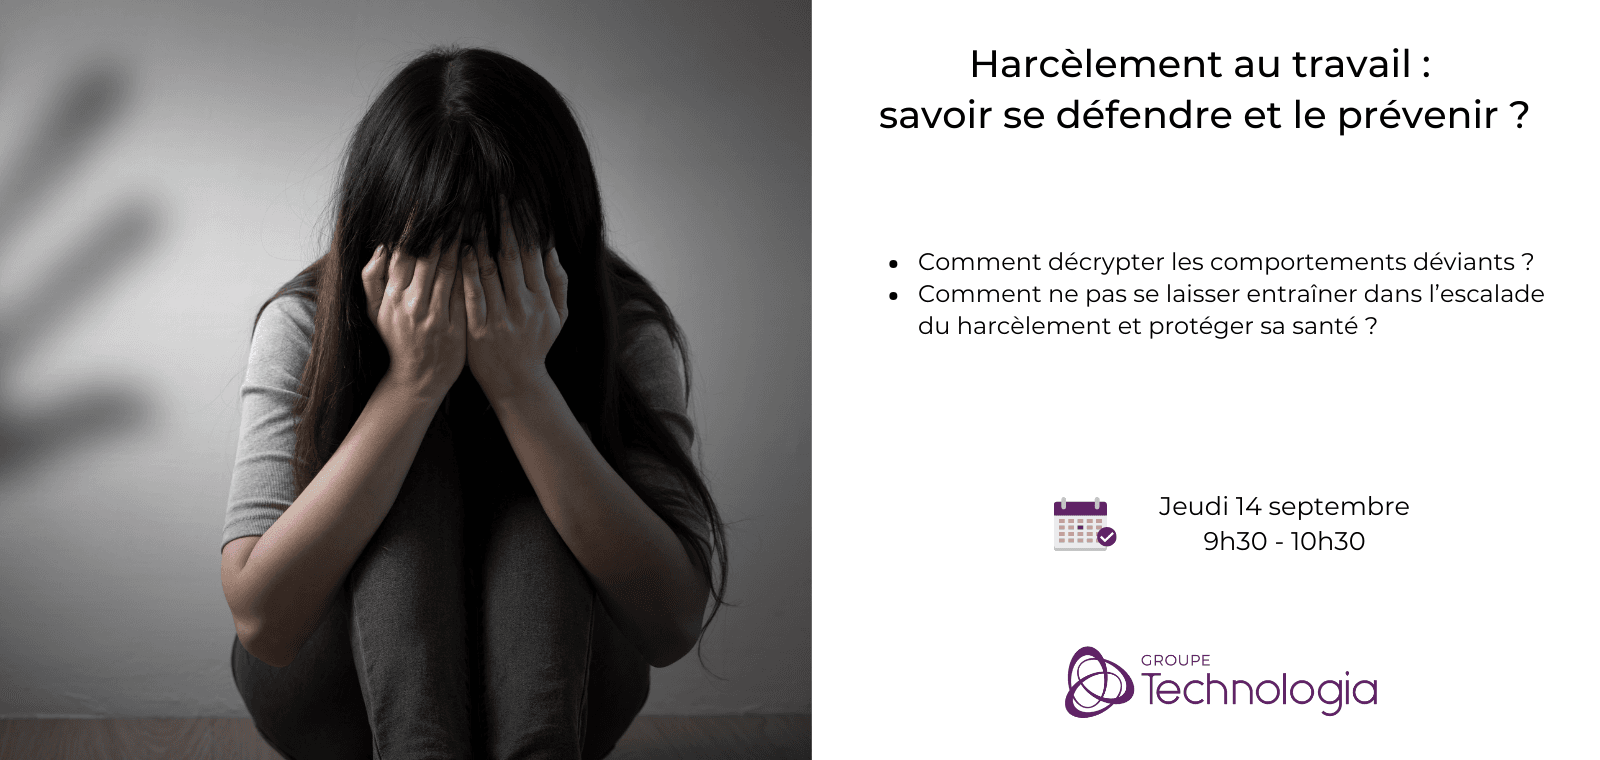 Harcèlement au travail : savoir se défendre et le prévenir ? - Approche pratique, juridique et psychologique